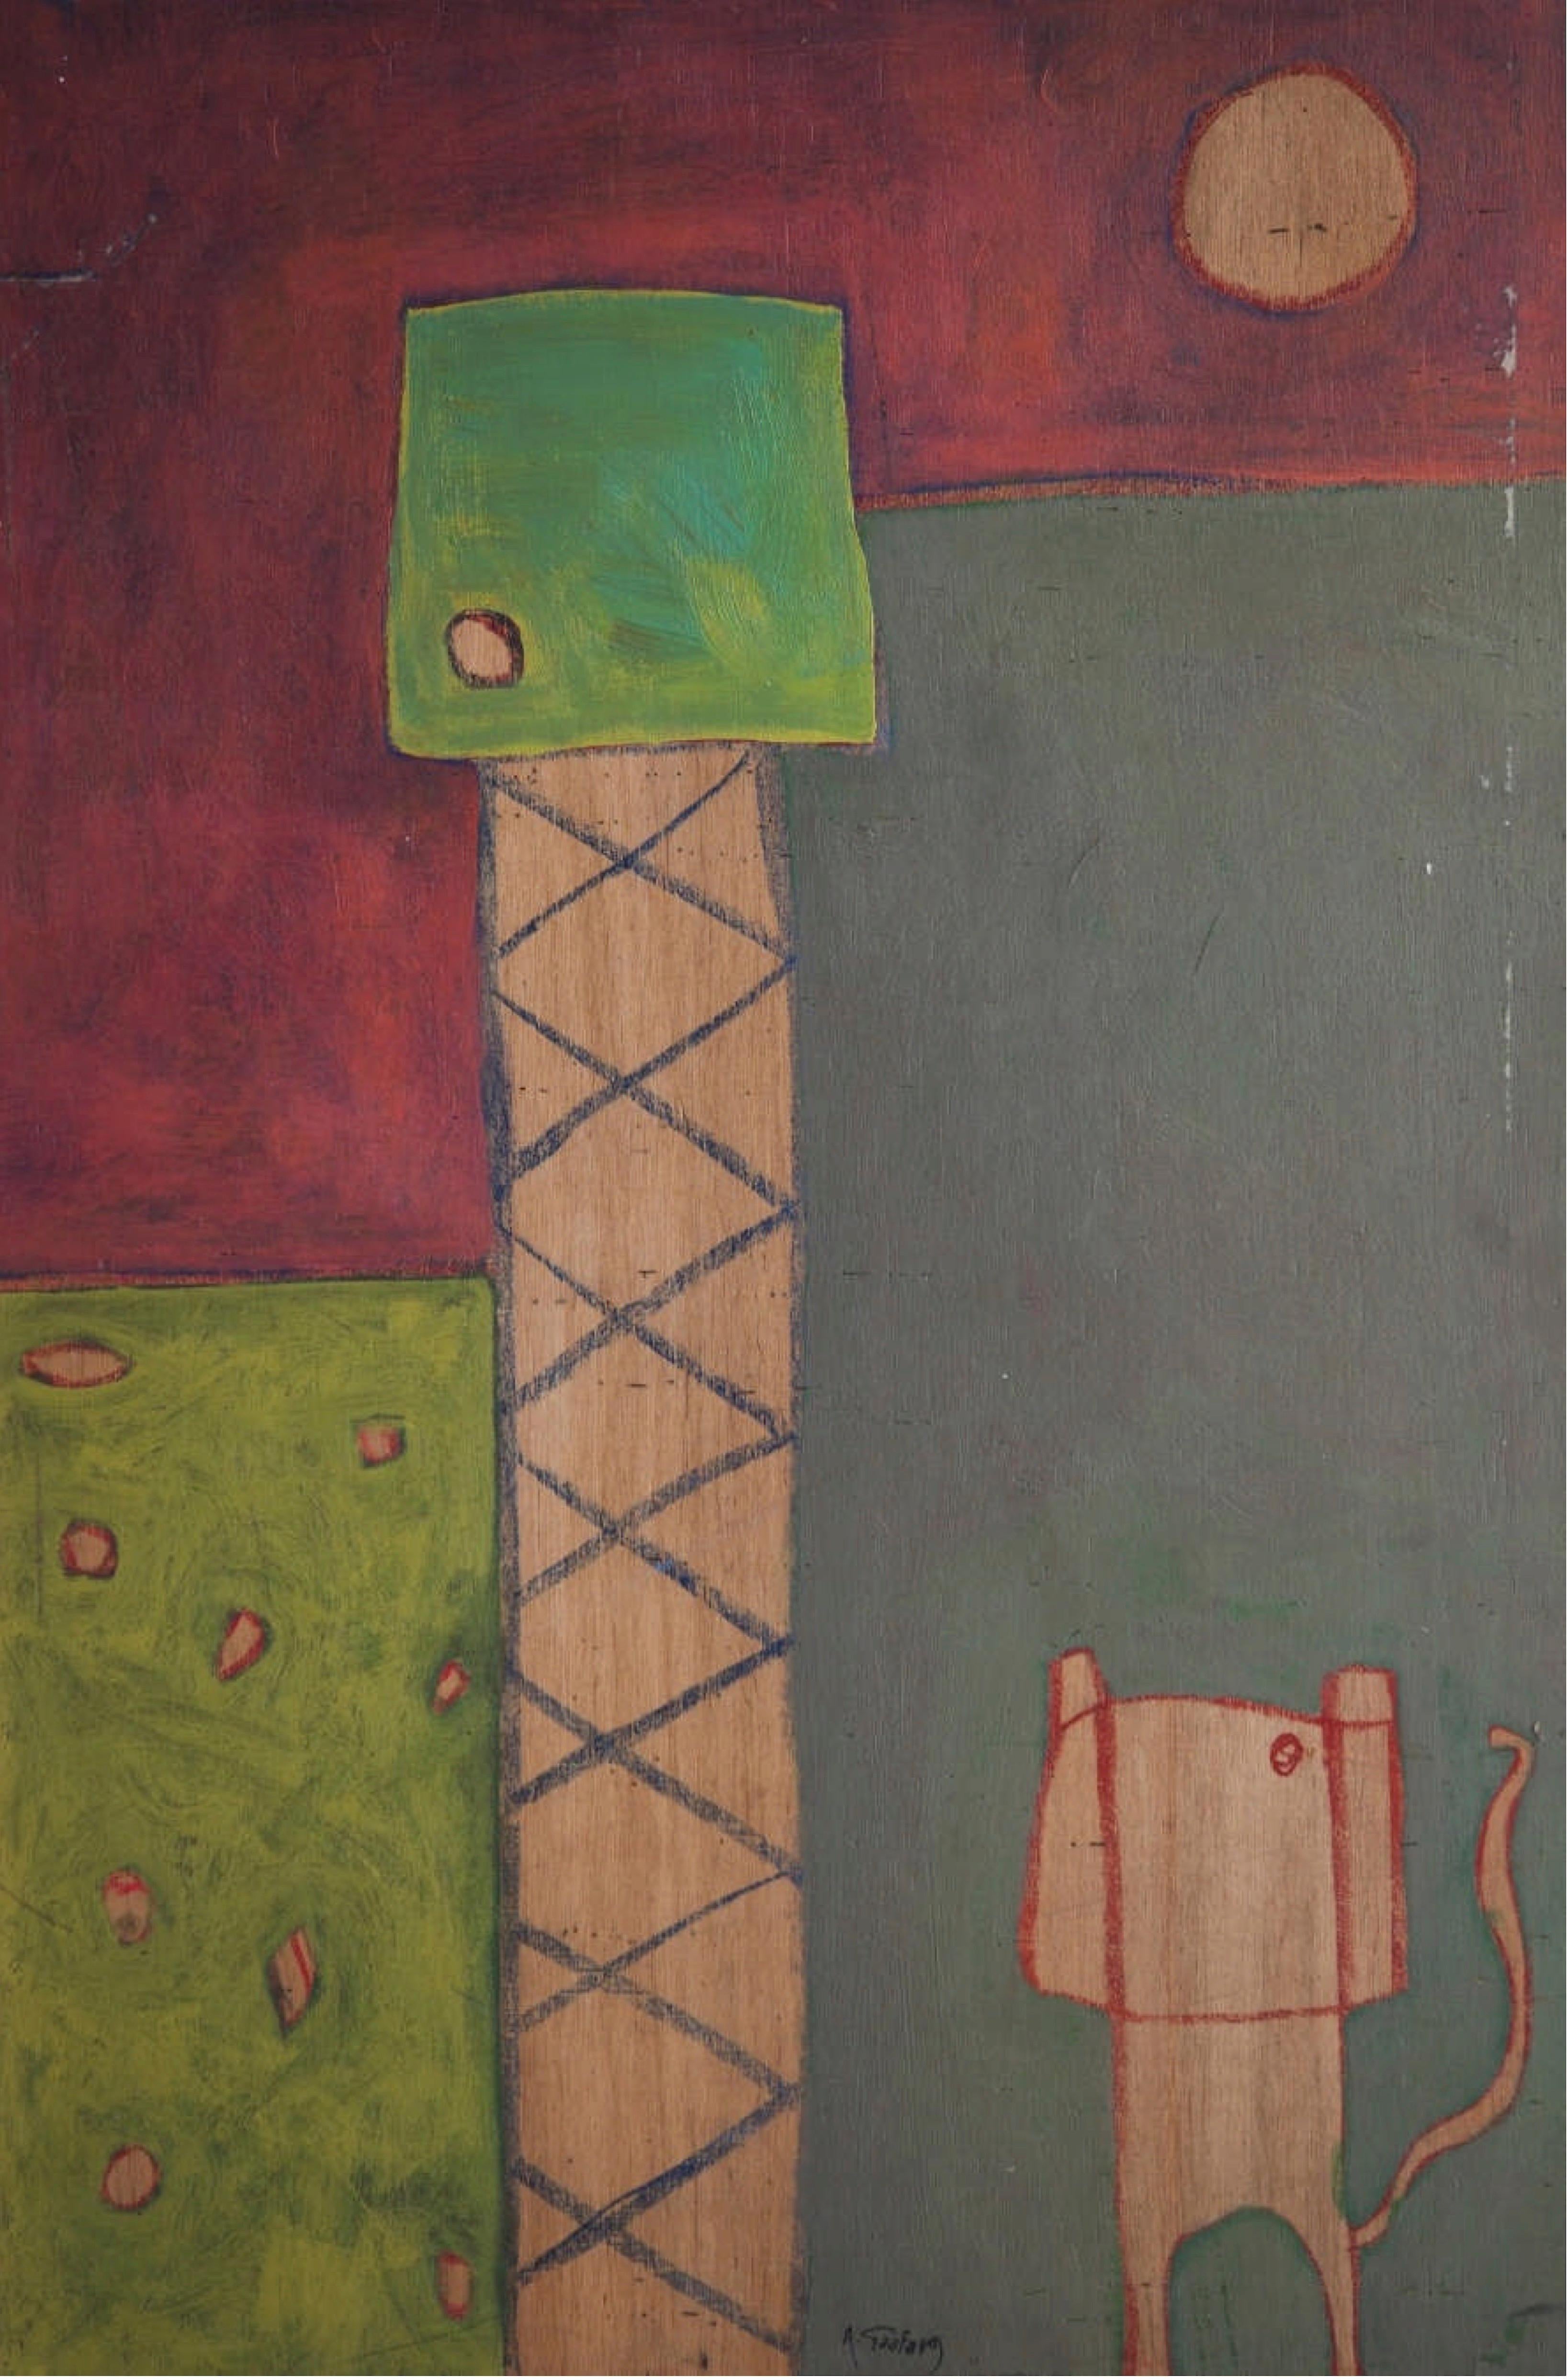 Abstraktes Gemälde „ Katze und Baum“ 35" x 24" Zoll von Ahmed Gaafary

Um diese Beschreibung zu beginnen, möchte ich mit dieser Frage beginnen: Ist das Innere der Dinge wichtiger oder ist es das, was uns visuell präsentiert wird? Natürlich nimmt der